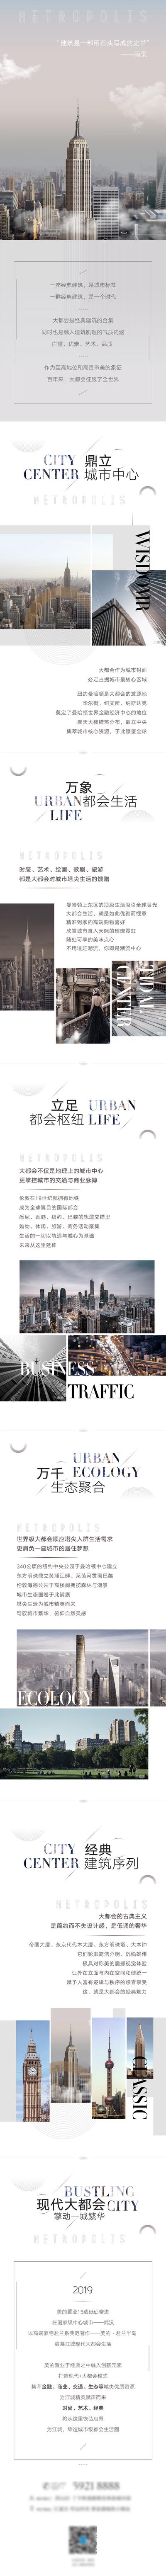 南门网 专题设计 长图 推文 房地产 商务 综合体 宣传 推广 高端 大气 大都会 城市